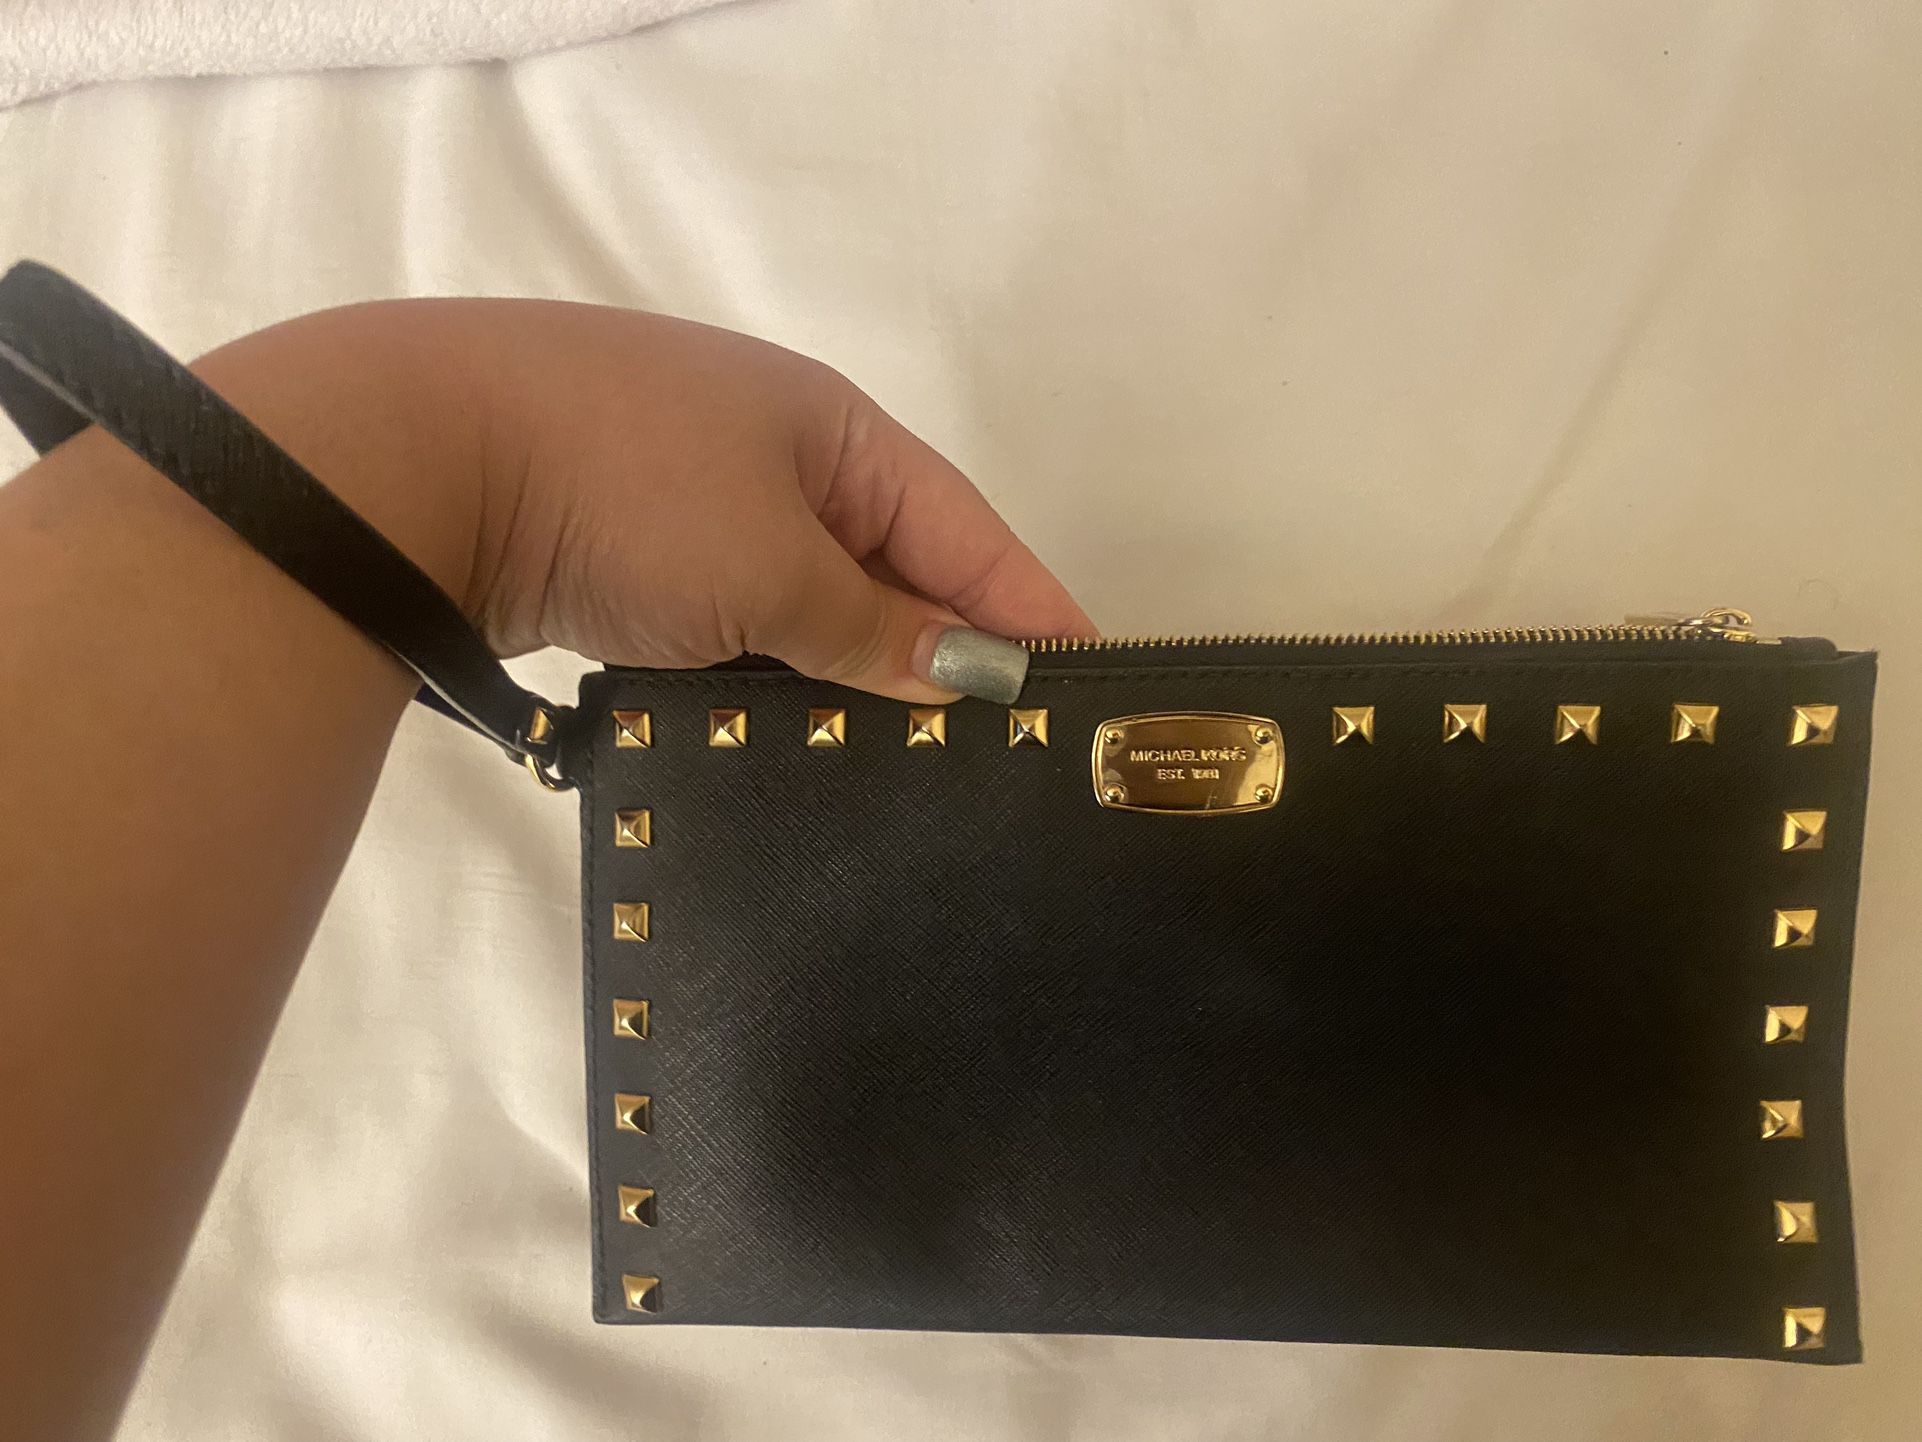 Michael Kors Handbag Super Cute